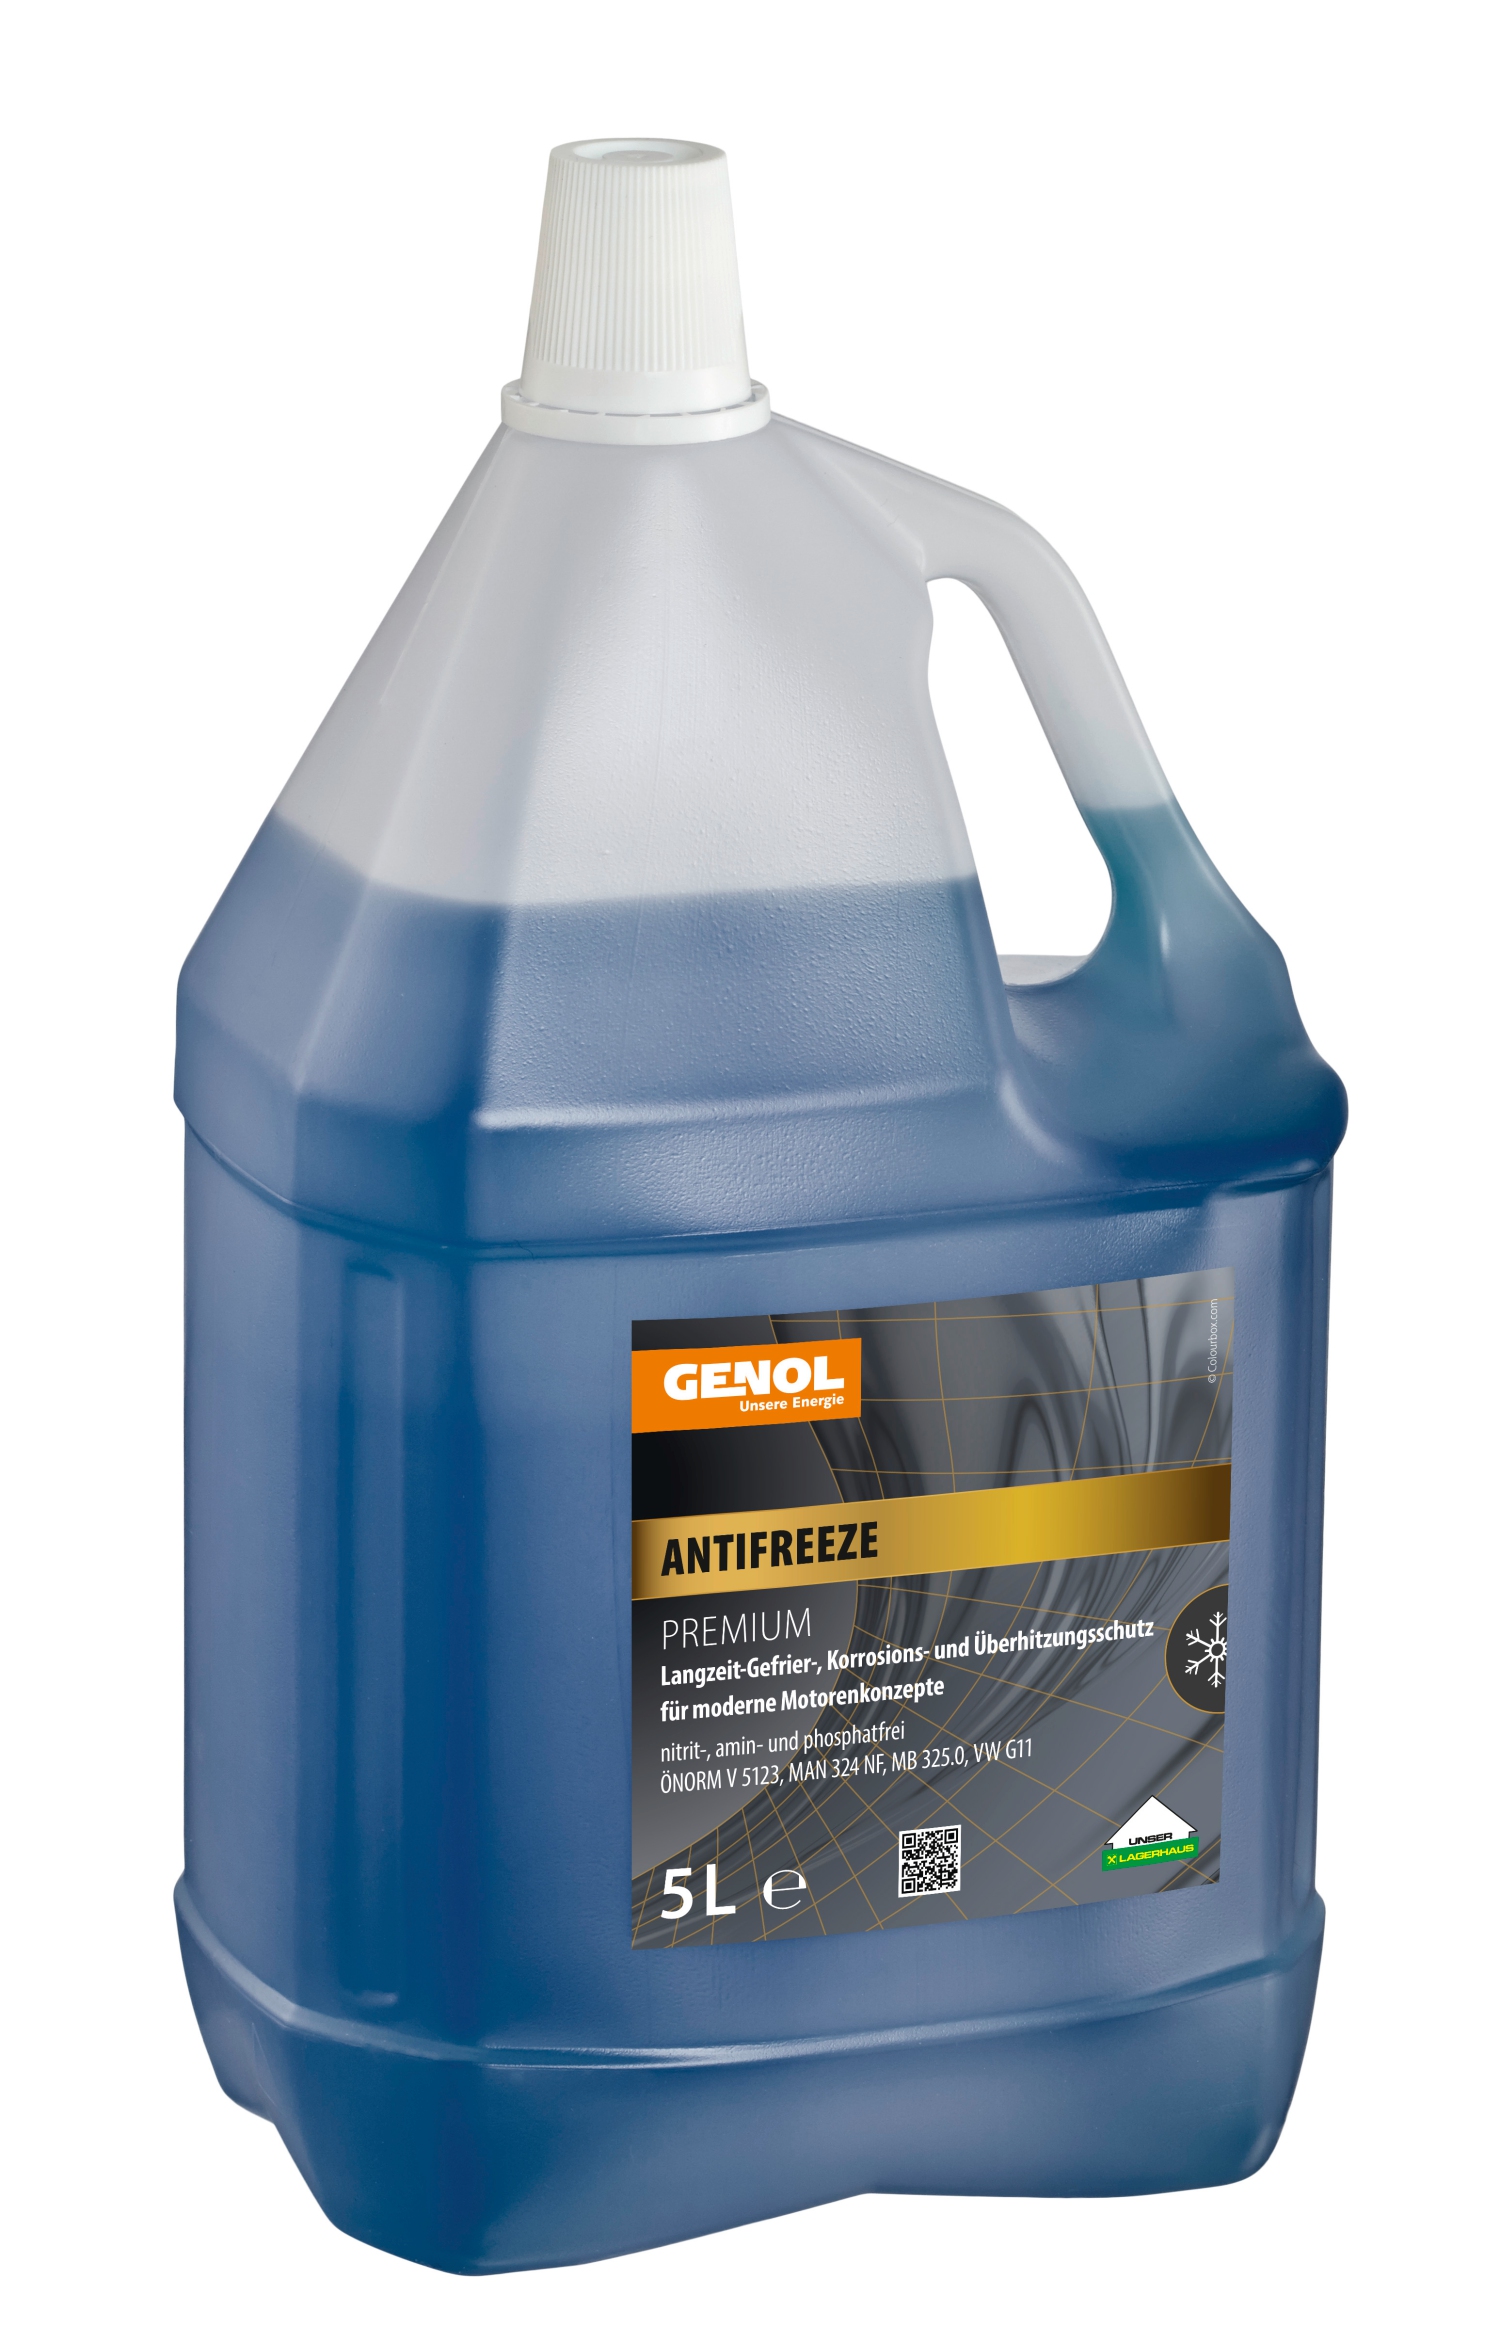 GENOL Antifreeze Premium, Frostschutzmittelkonzentrat